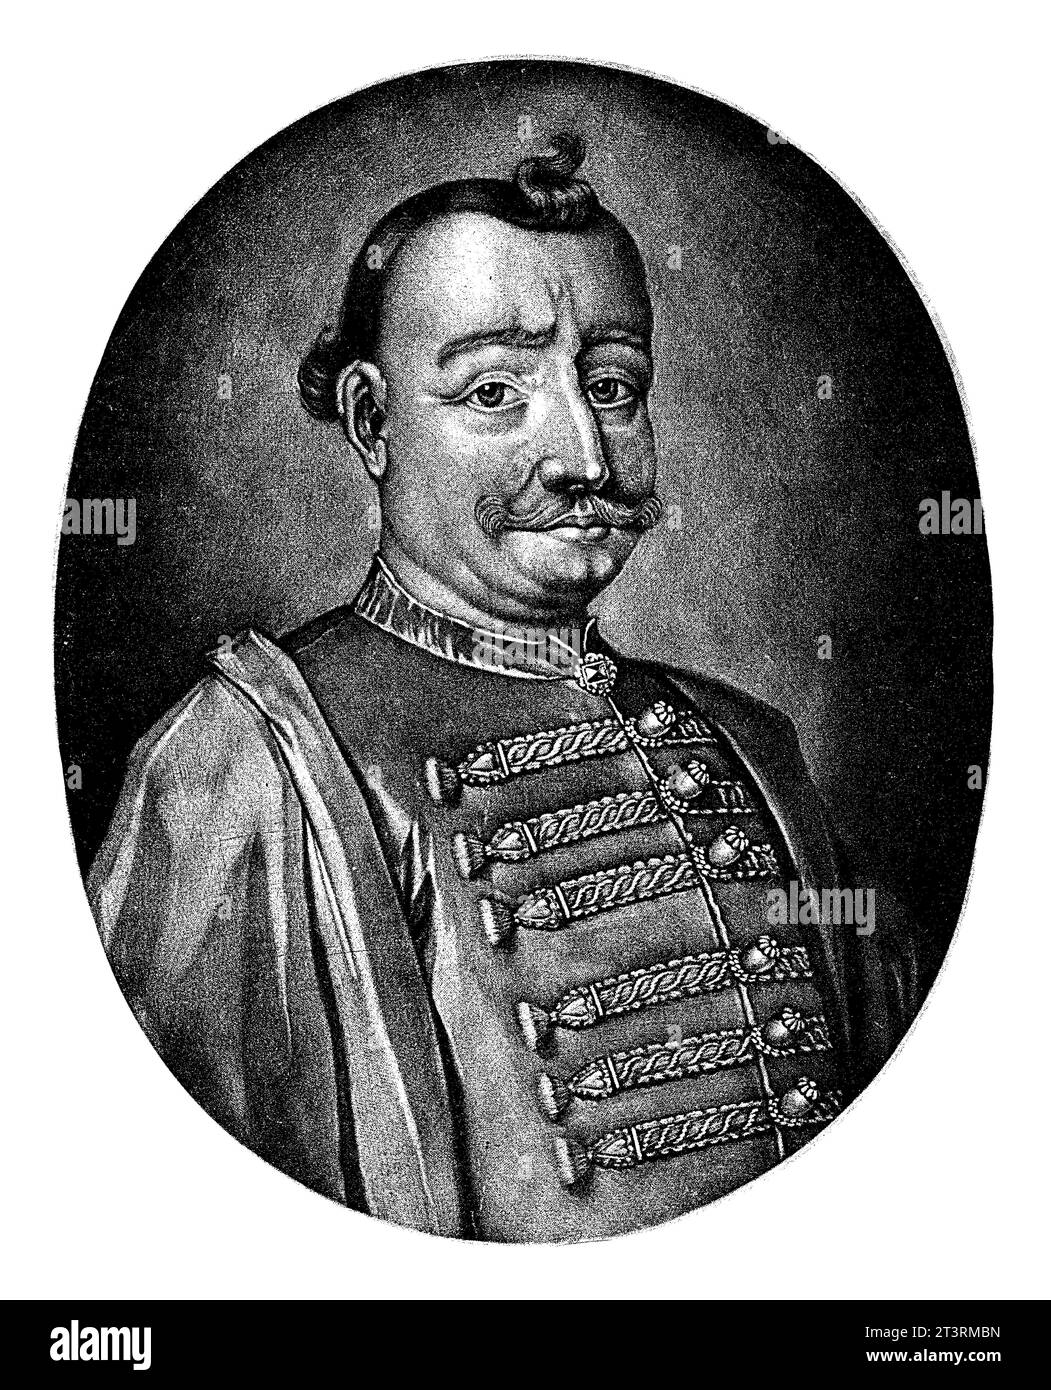 Ritratto del barone Emmerich Tekkely, Pieter Schenk (i), 1670 - 1713 Barone Emmerich Tekkely, leader dei malcontenti ungheresi (insoddisfatti). Foto Stock